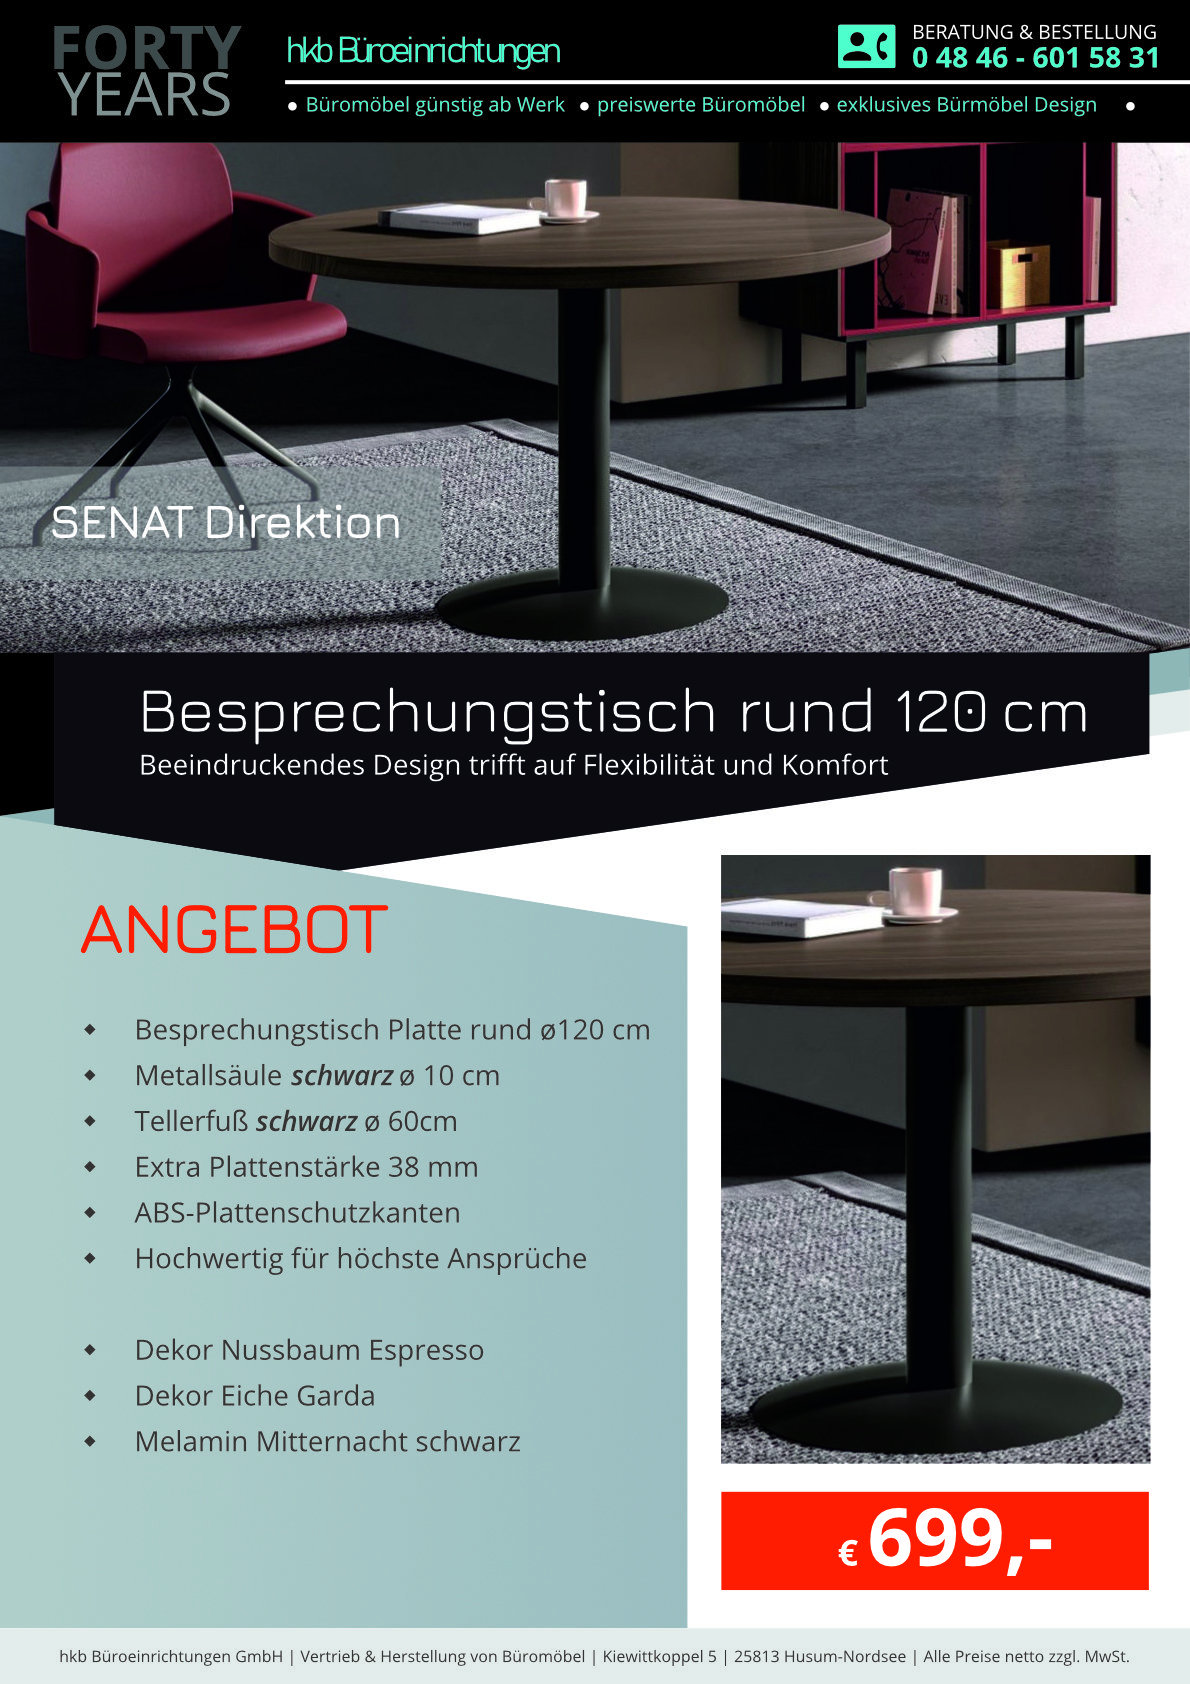 Angebot Besprechungstisch rund 120cm aus der Kollektion Büromöbel Senat von der Firma HKB Büroeinrichtungen GmbH Husum